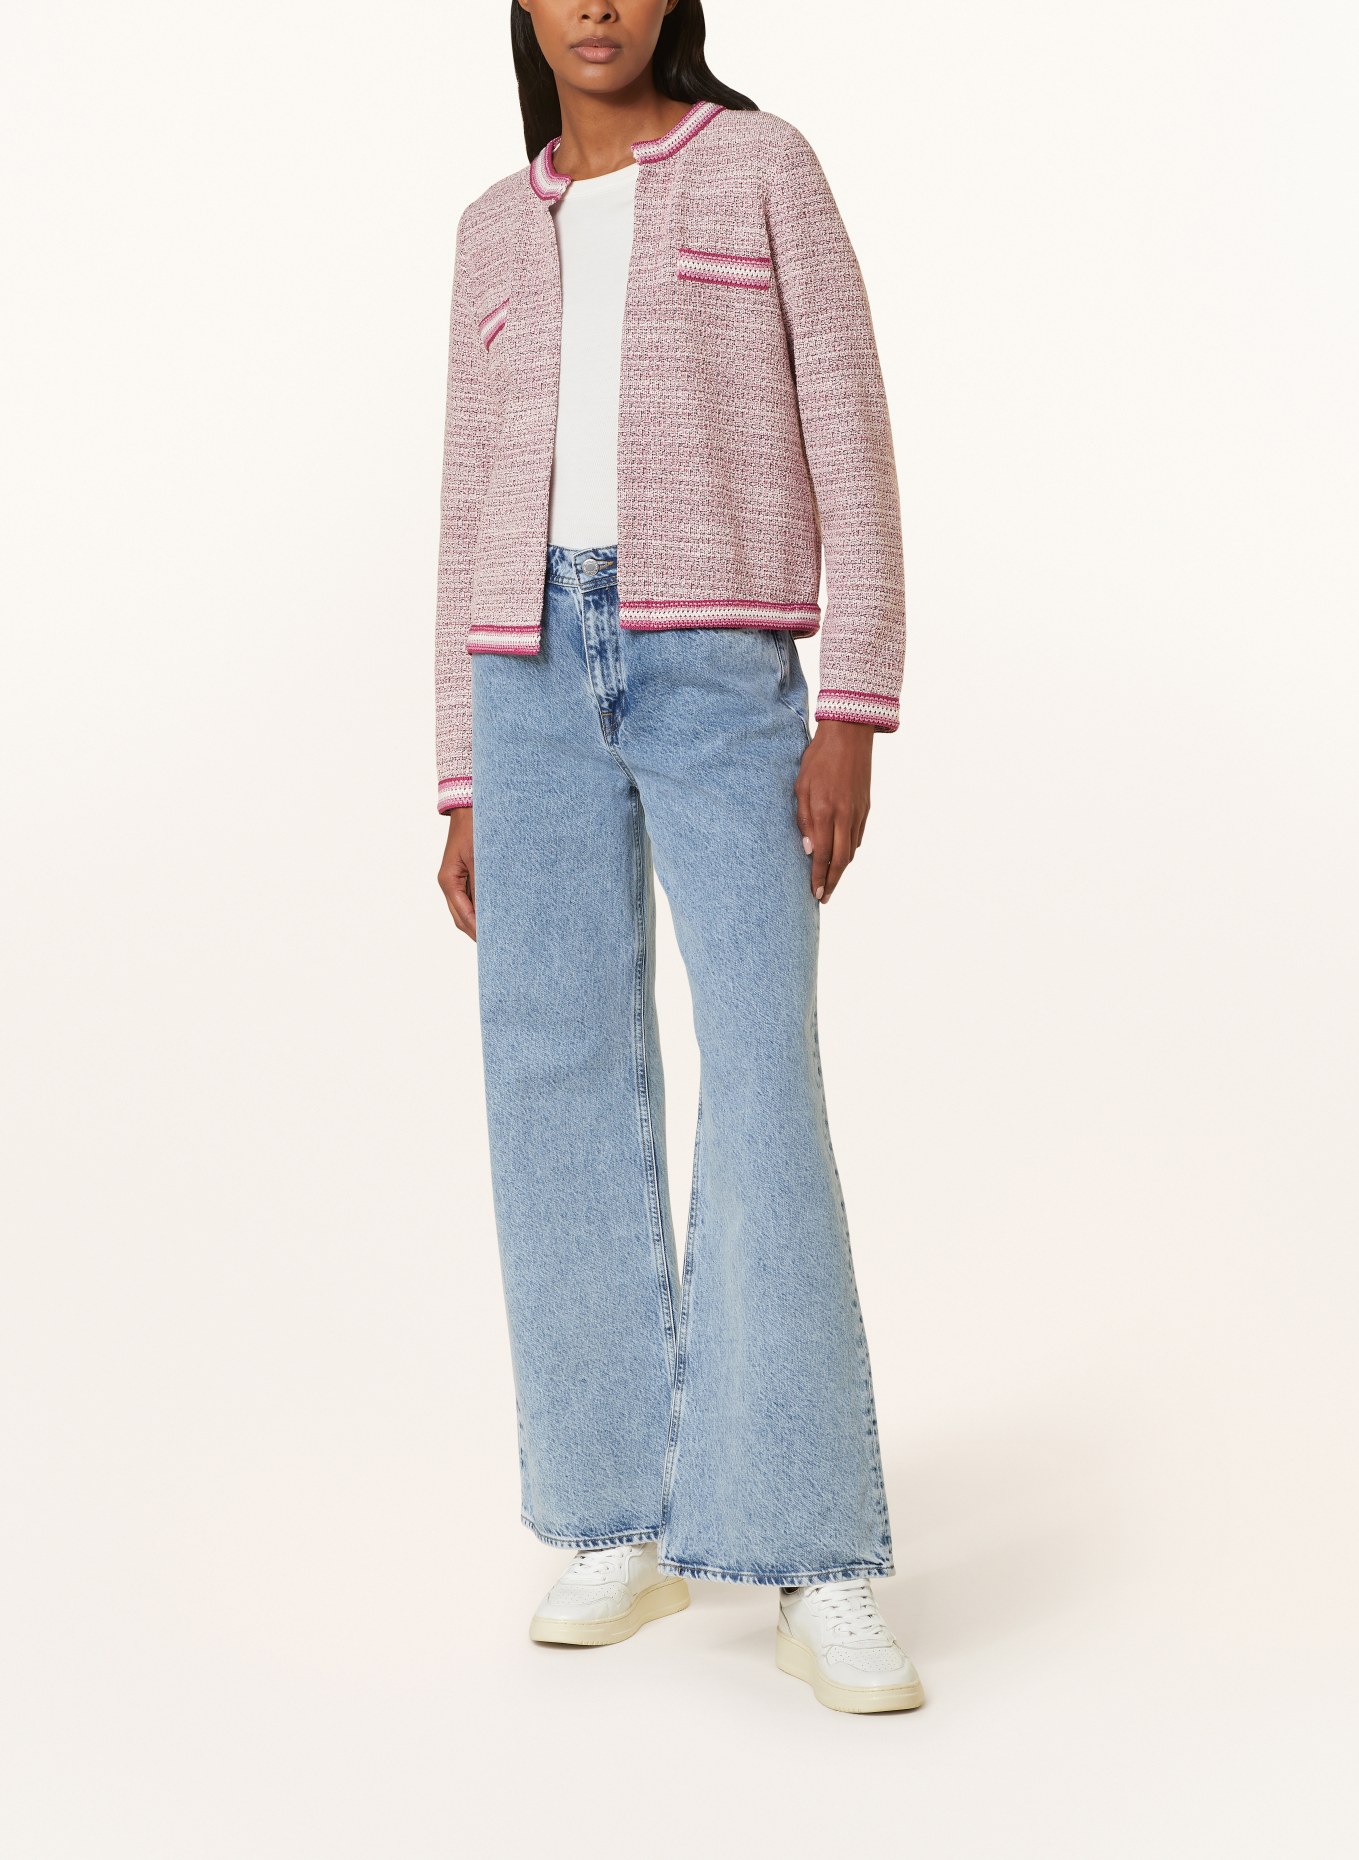 CARTOON Knit cardigan, Color: FUCHSIA/ ECRU/ LIGHT PURPLE (Image 2)